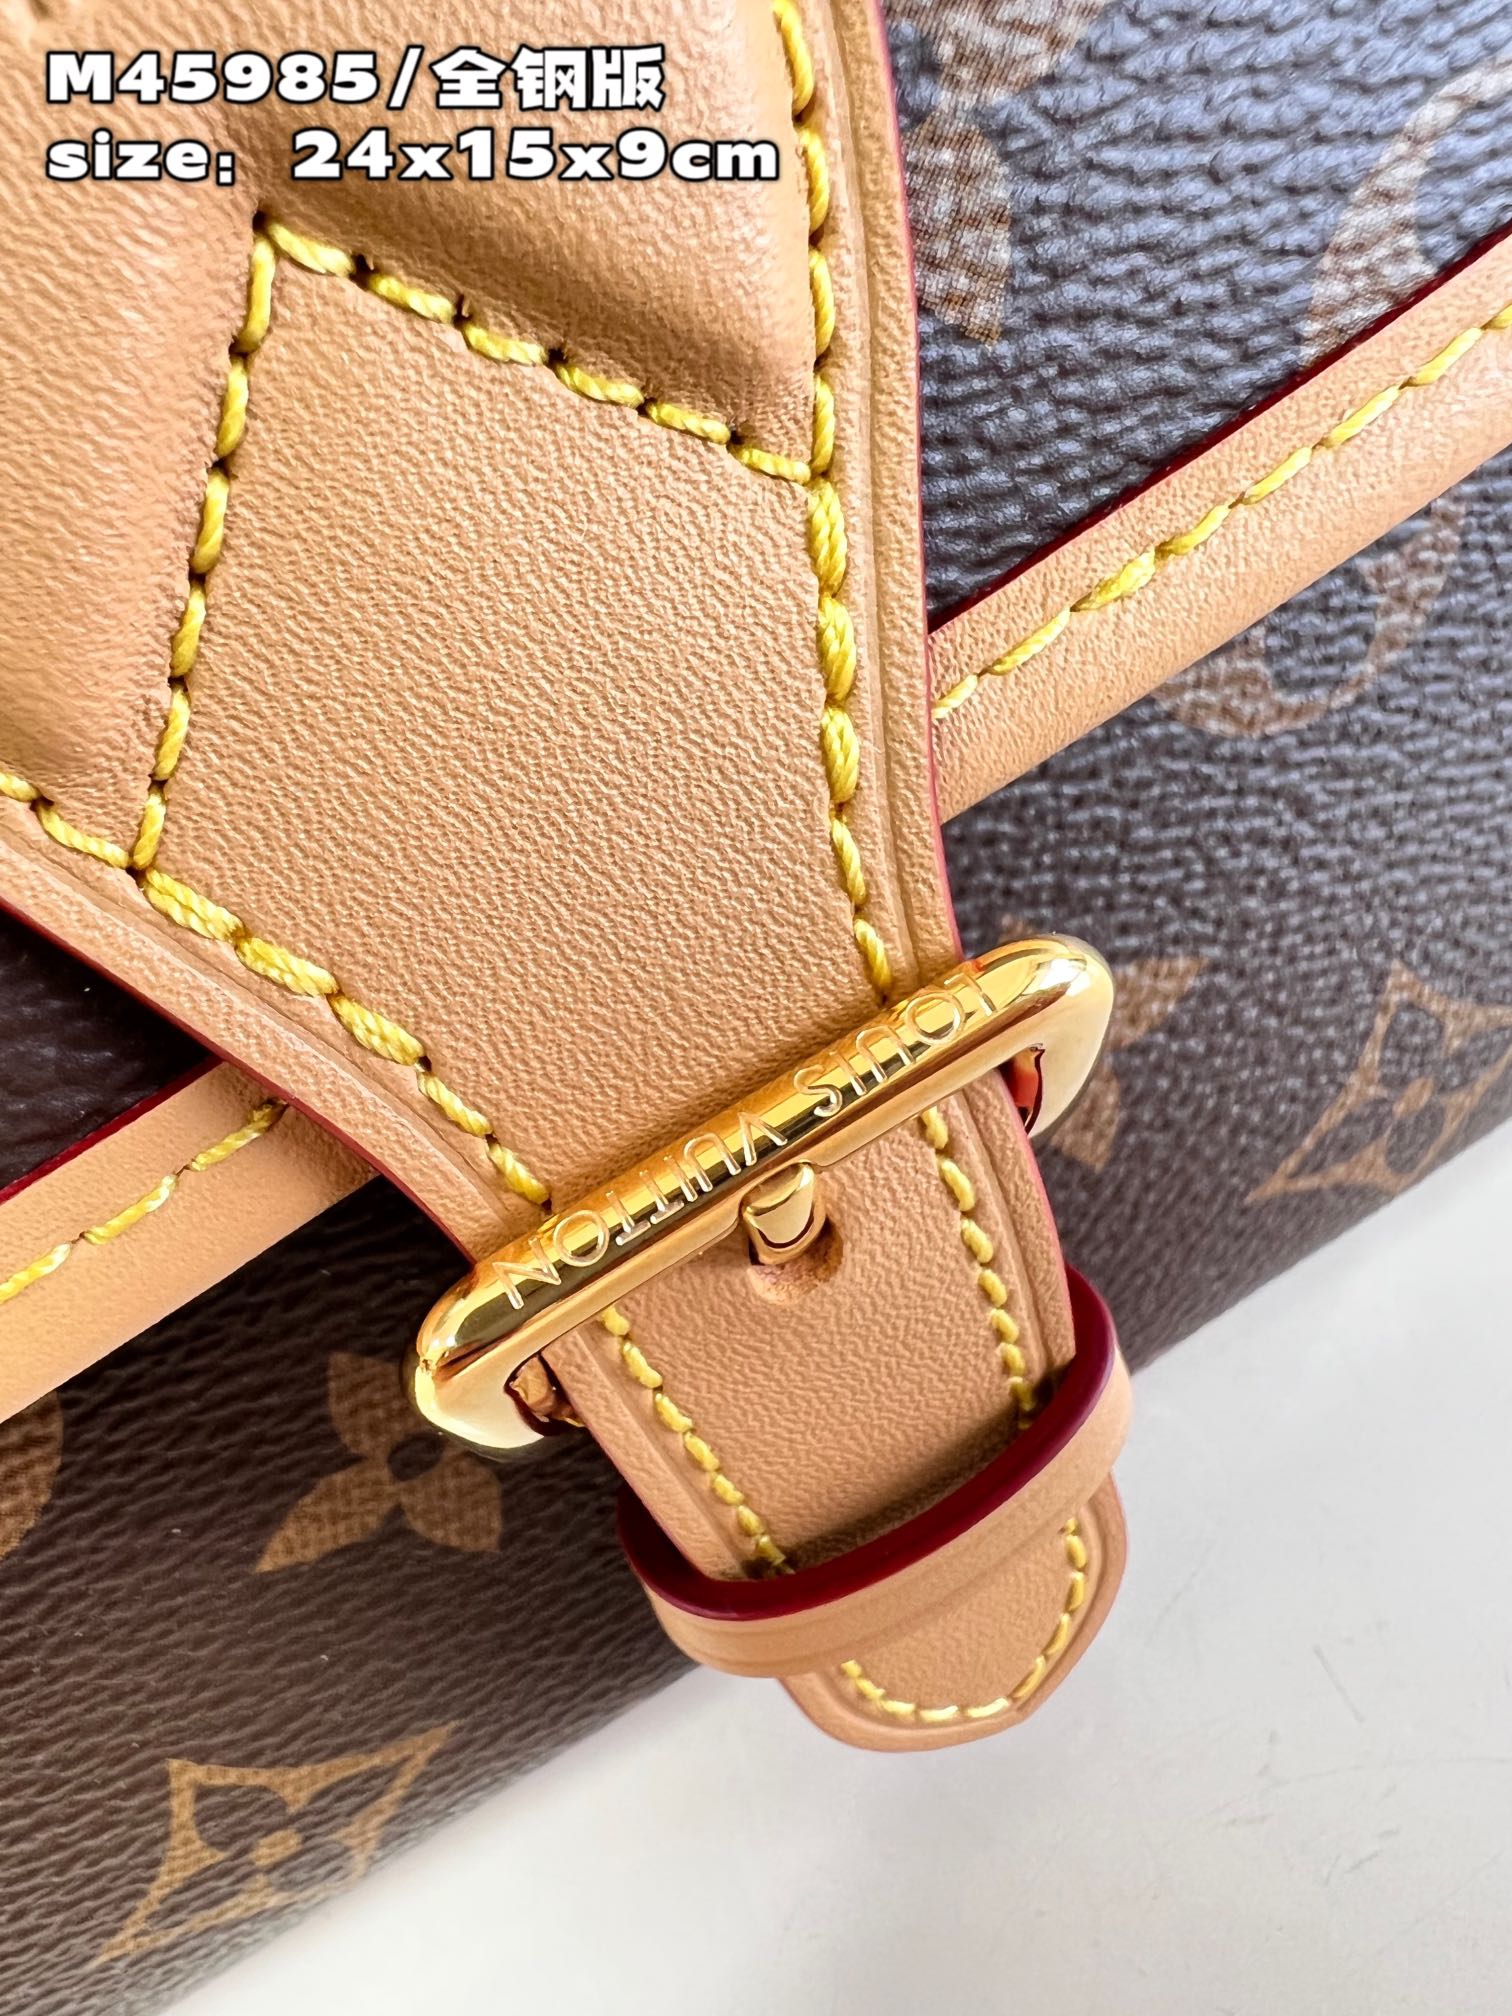 顶级原单M45985/全钢版Diane手袋重塑1990年代的经典设计为Monogram帆布包身融入皮革包